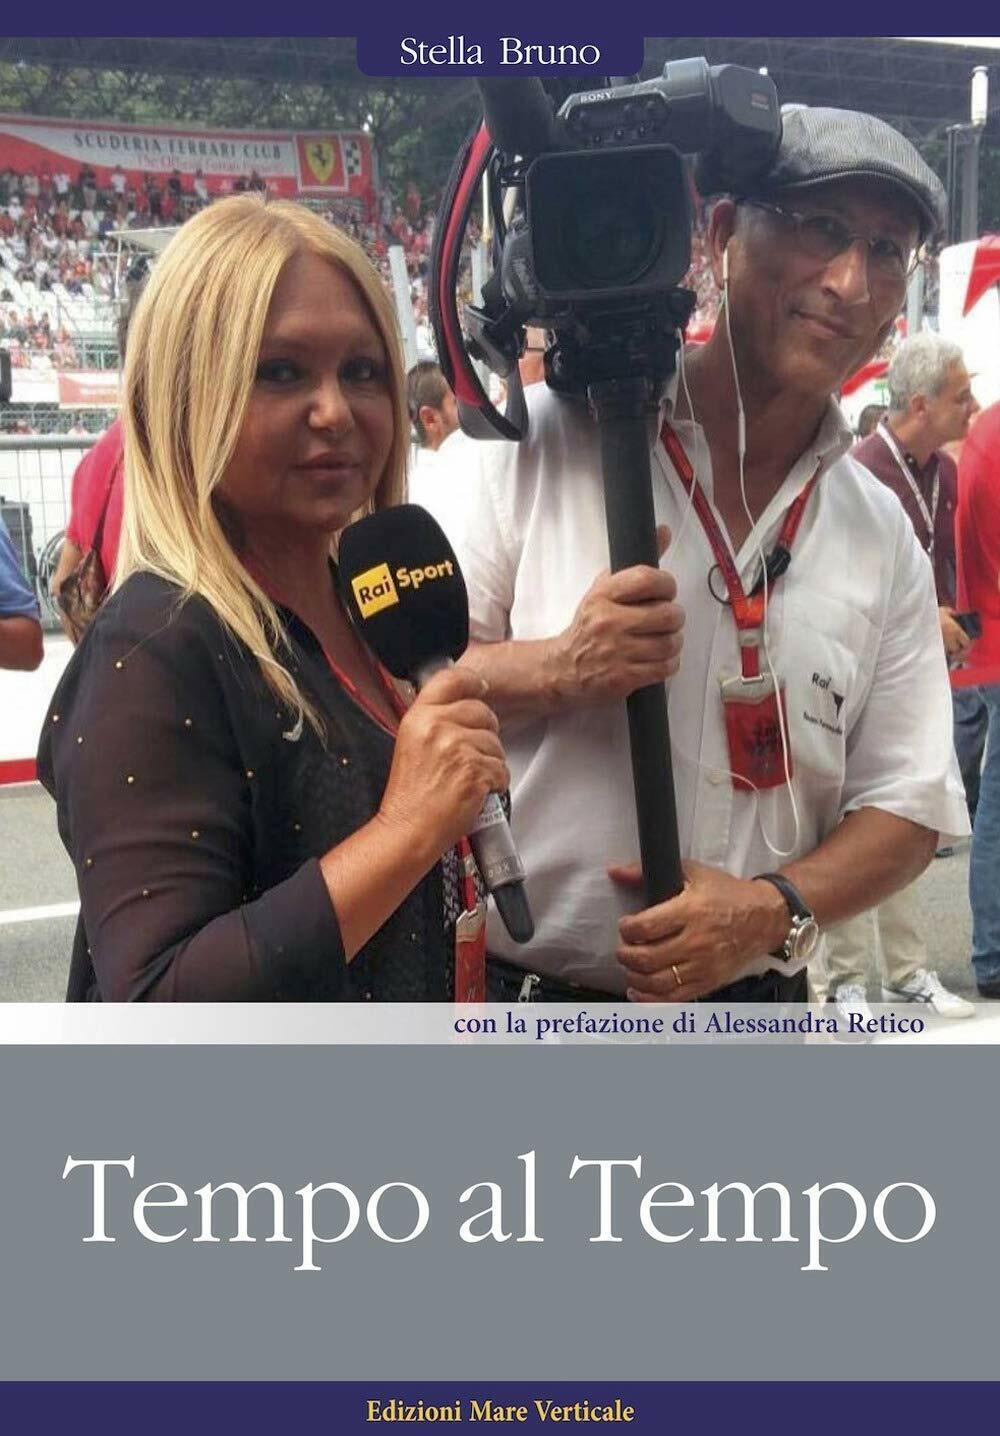 Tempo al tempo. La vita nel paddock della Formula 1 - Stella Bruno - 2019 libro usato